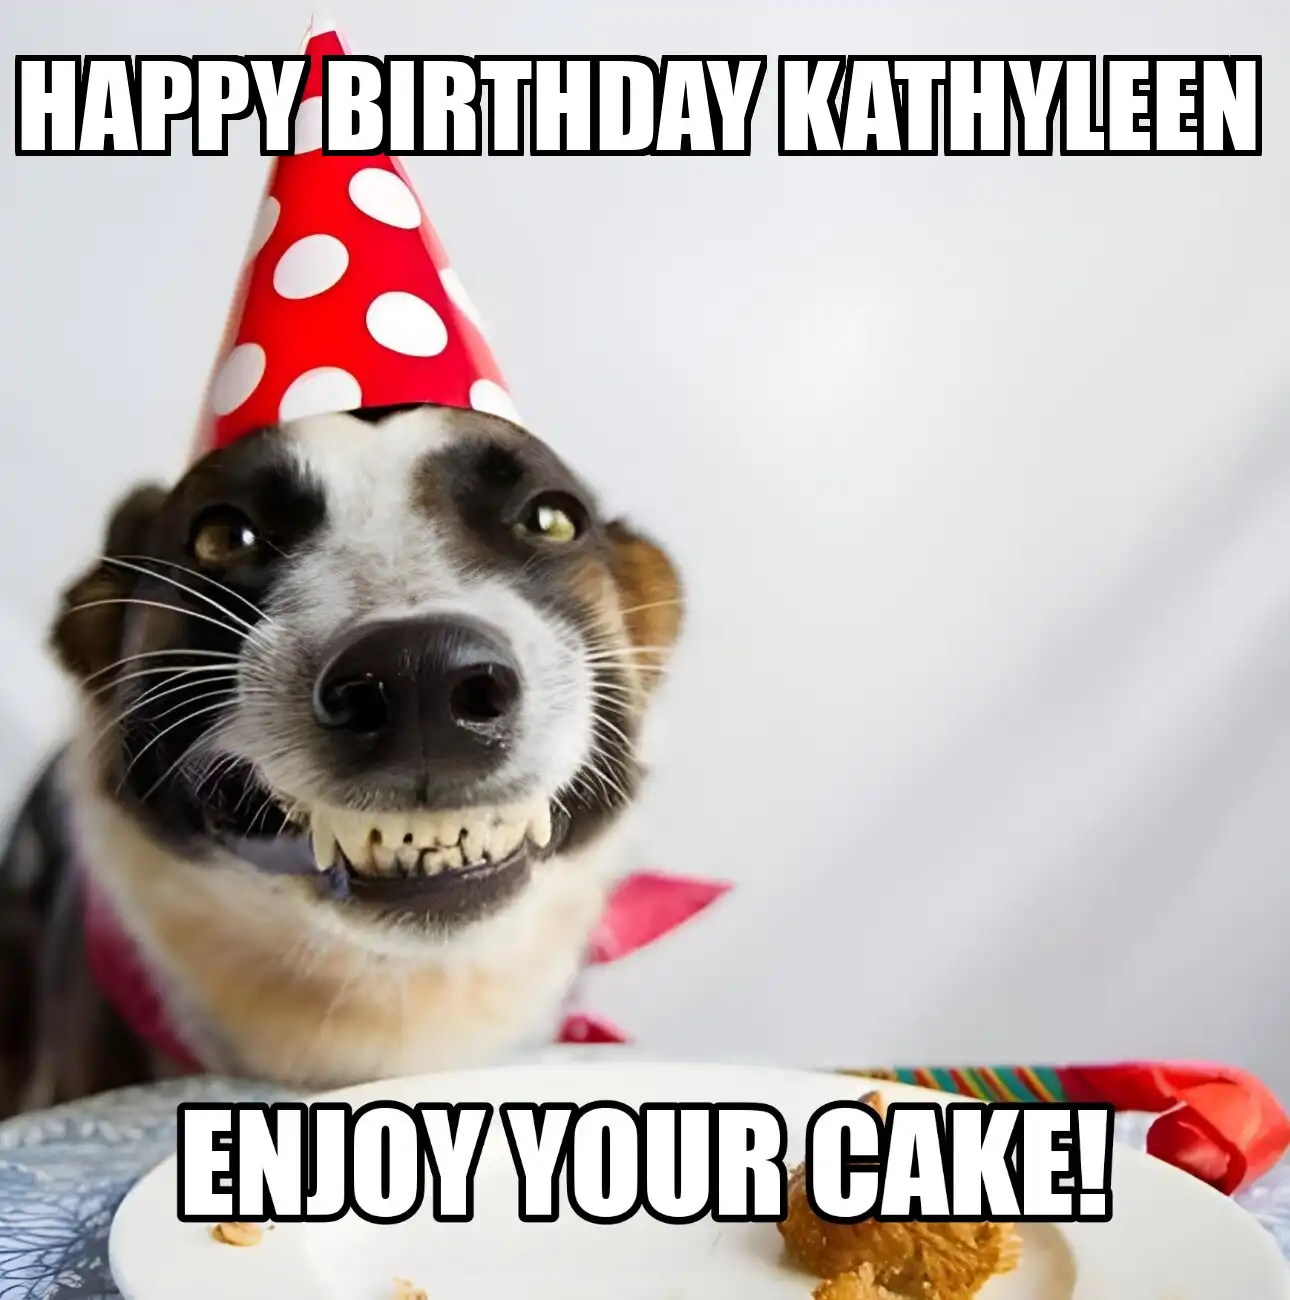 Happy Birthday Kathyleen Enjoy Your Cake Dog Meme